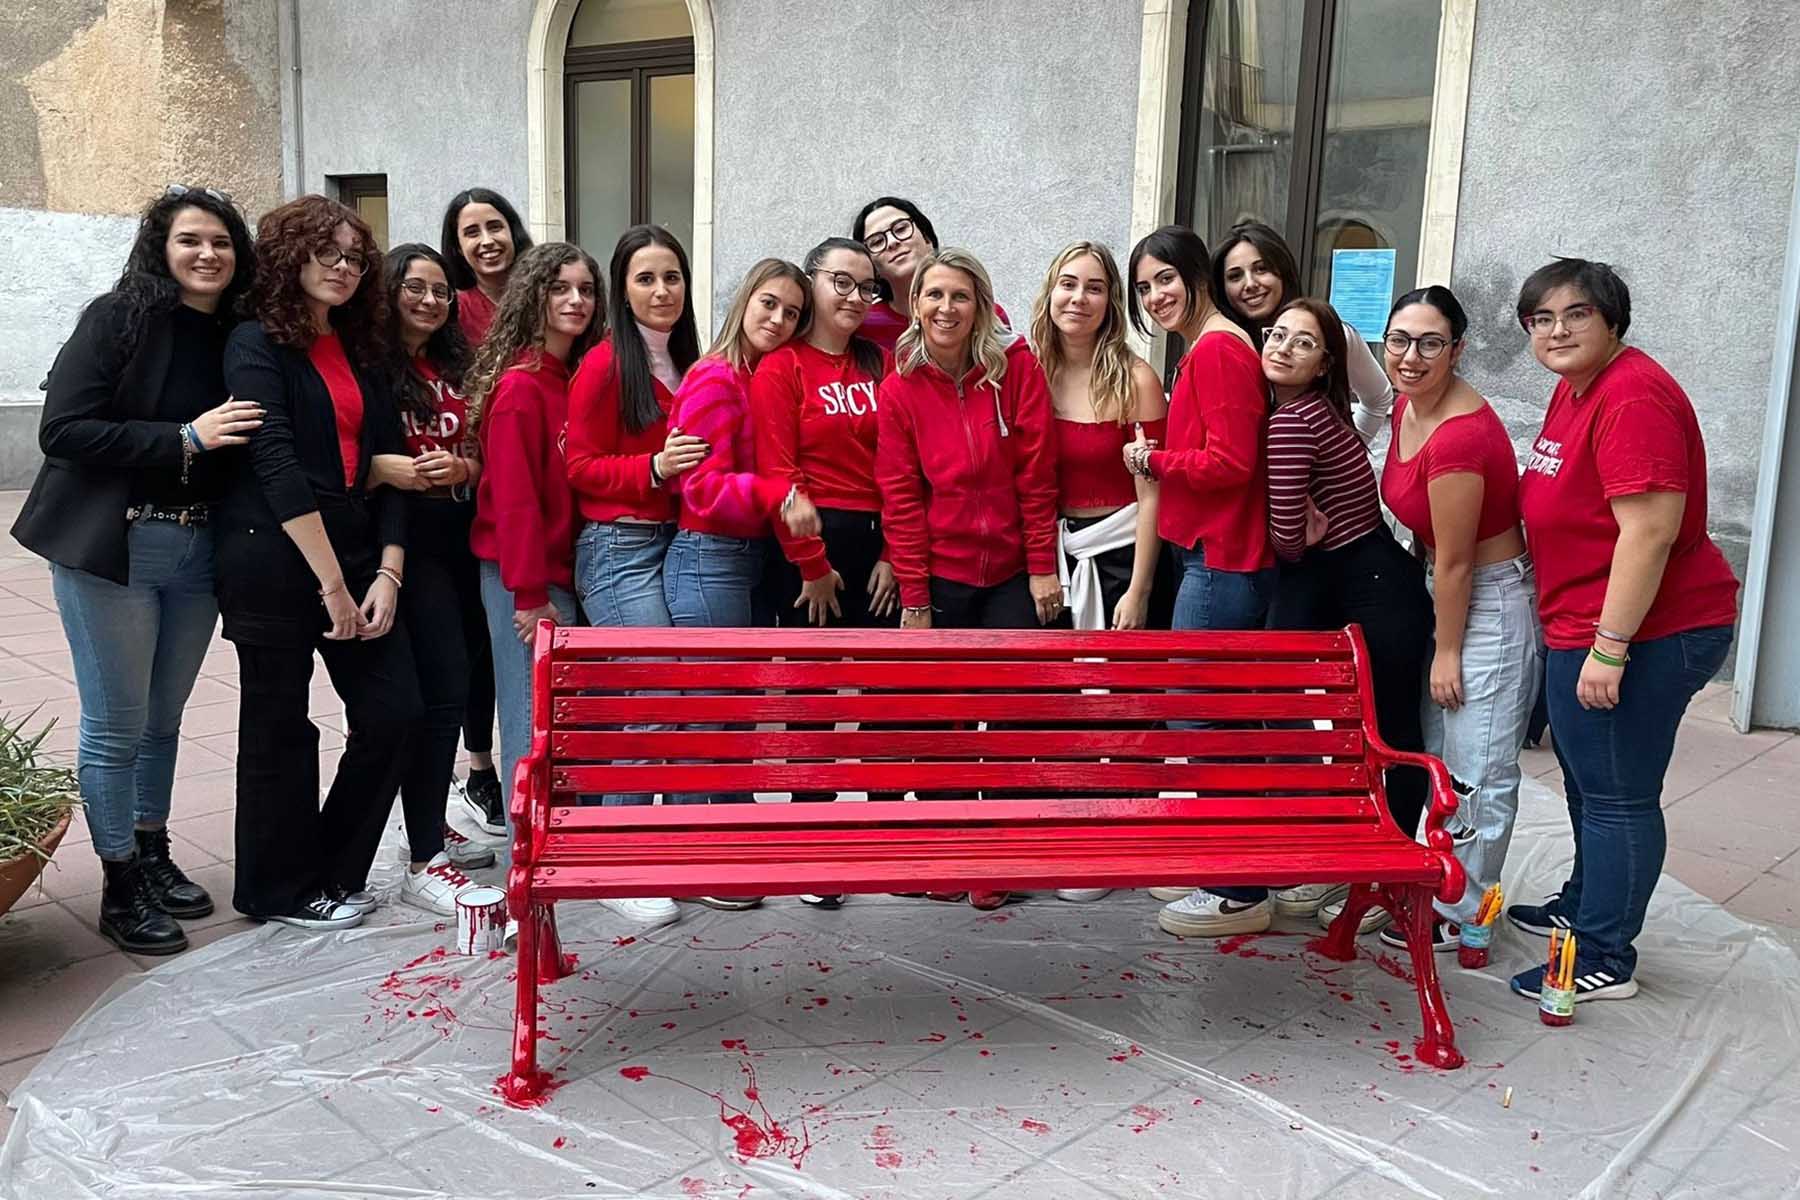 La panchina rossa realizzata dalle studentesse del Disfor